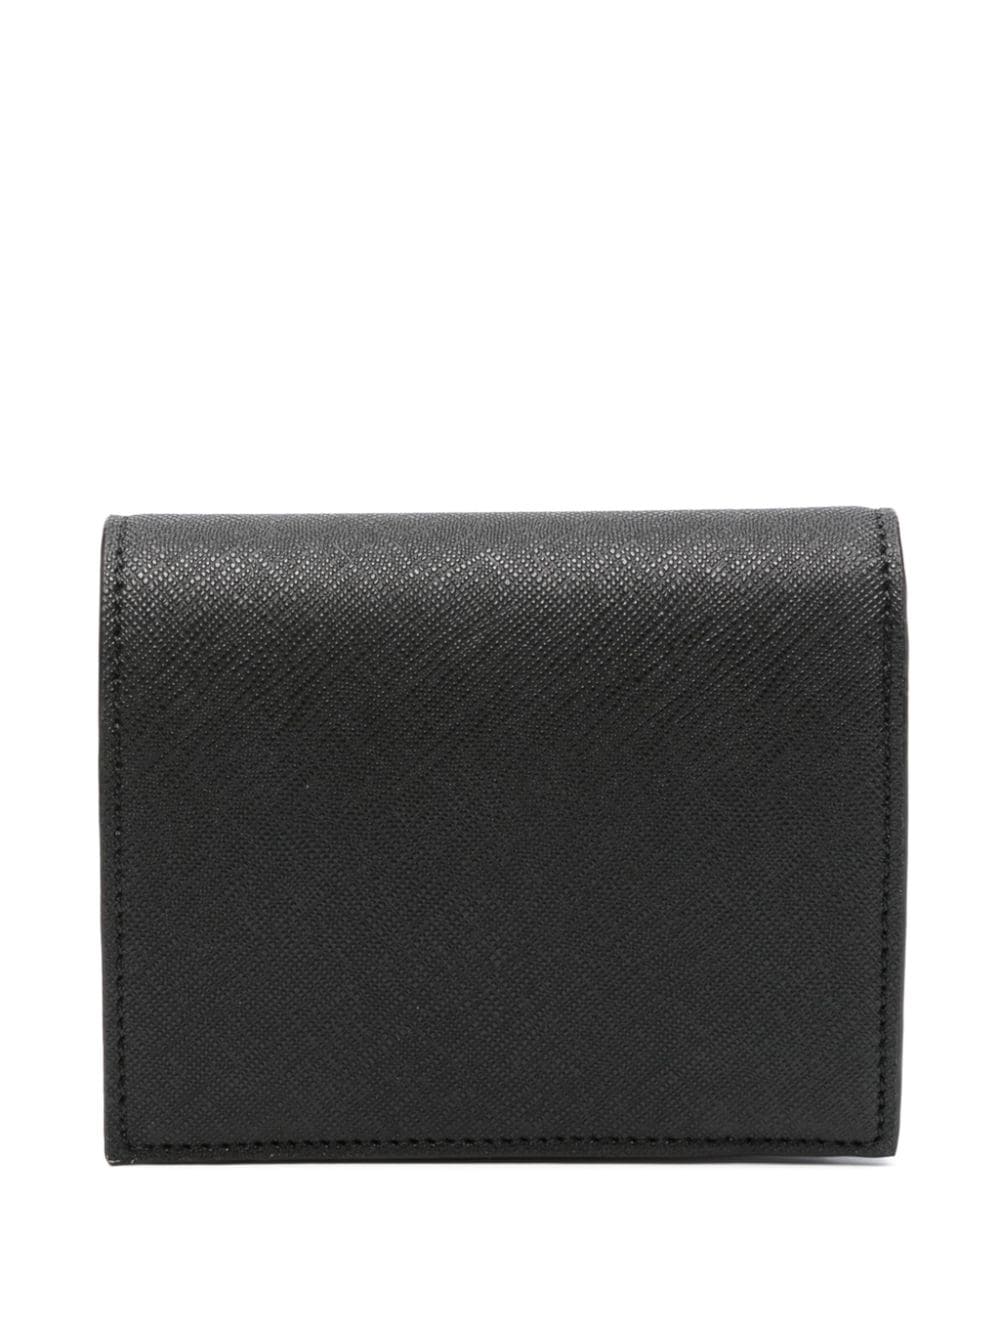 Vivienne Westwood Orb tweevoudige portemonnee Zwart